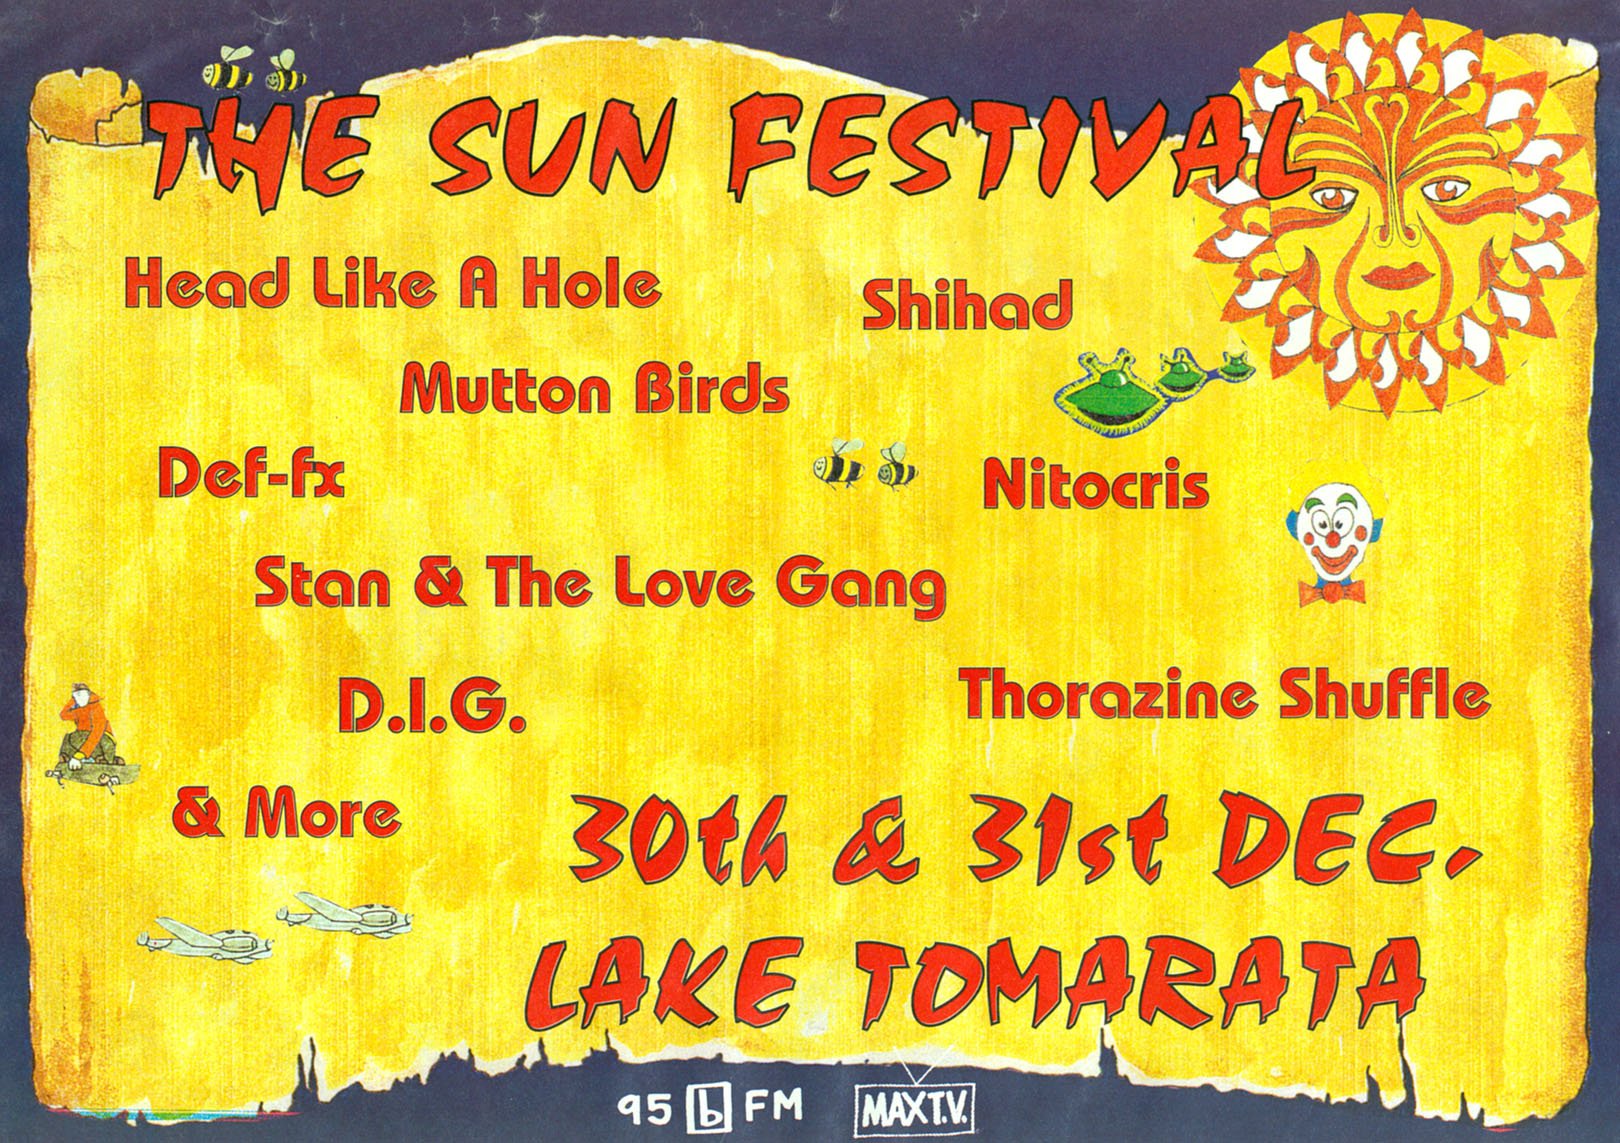 1996 Dec 30th-31st The Sun Festival Tour Ad.jpg